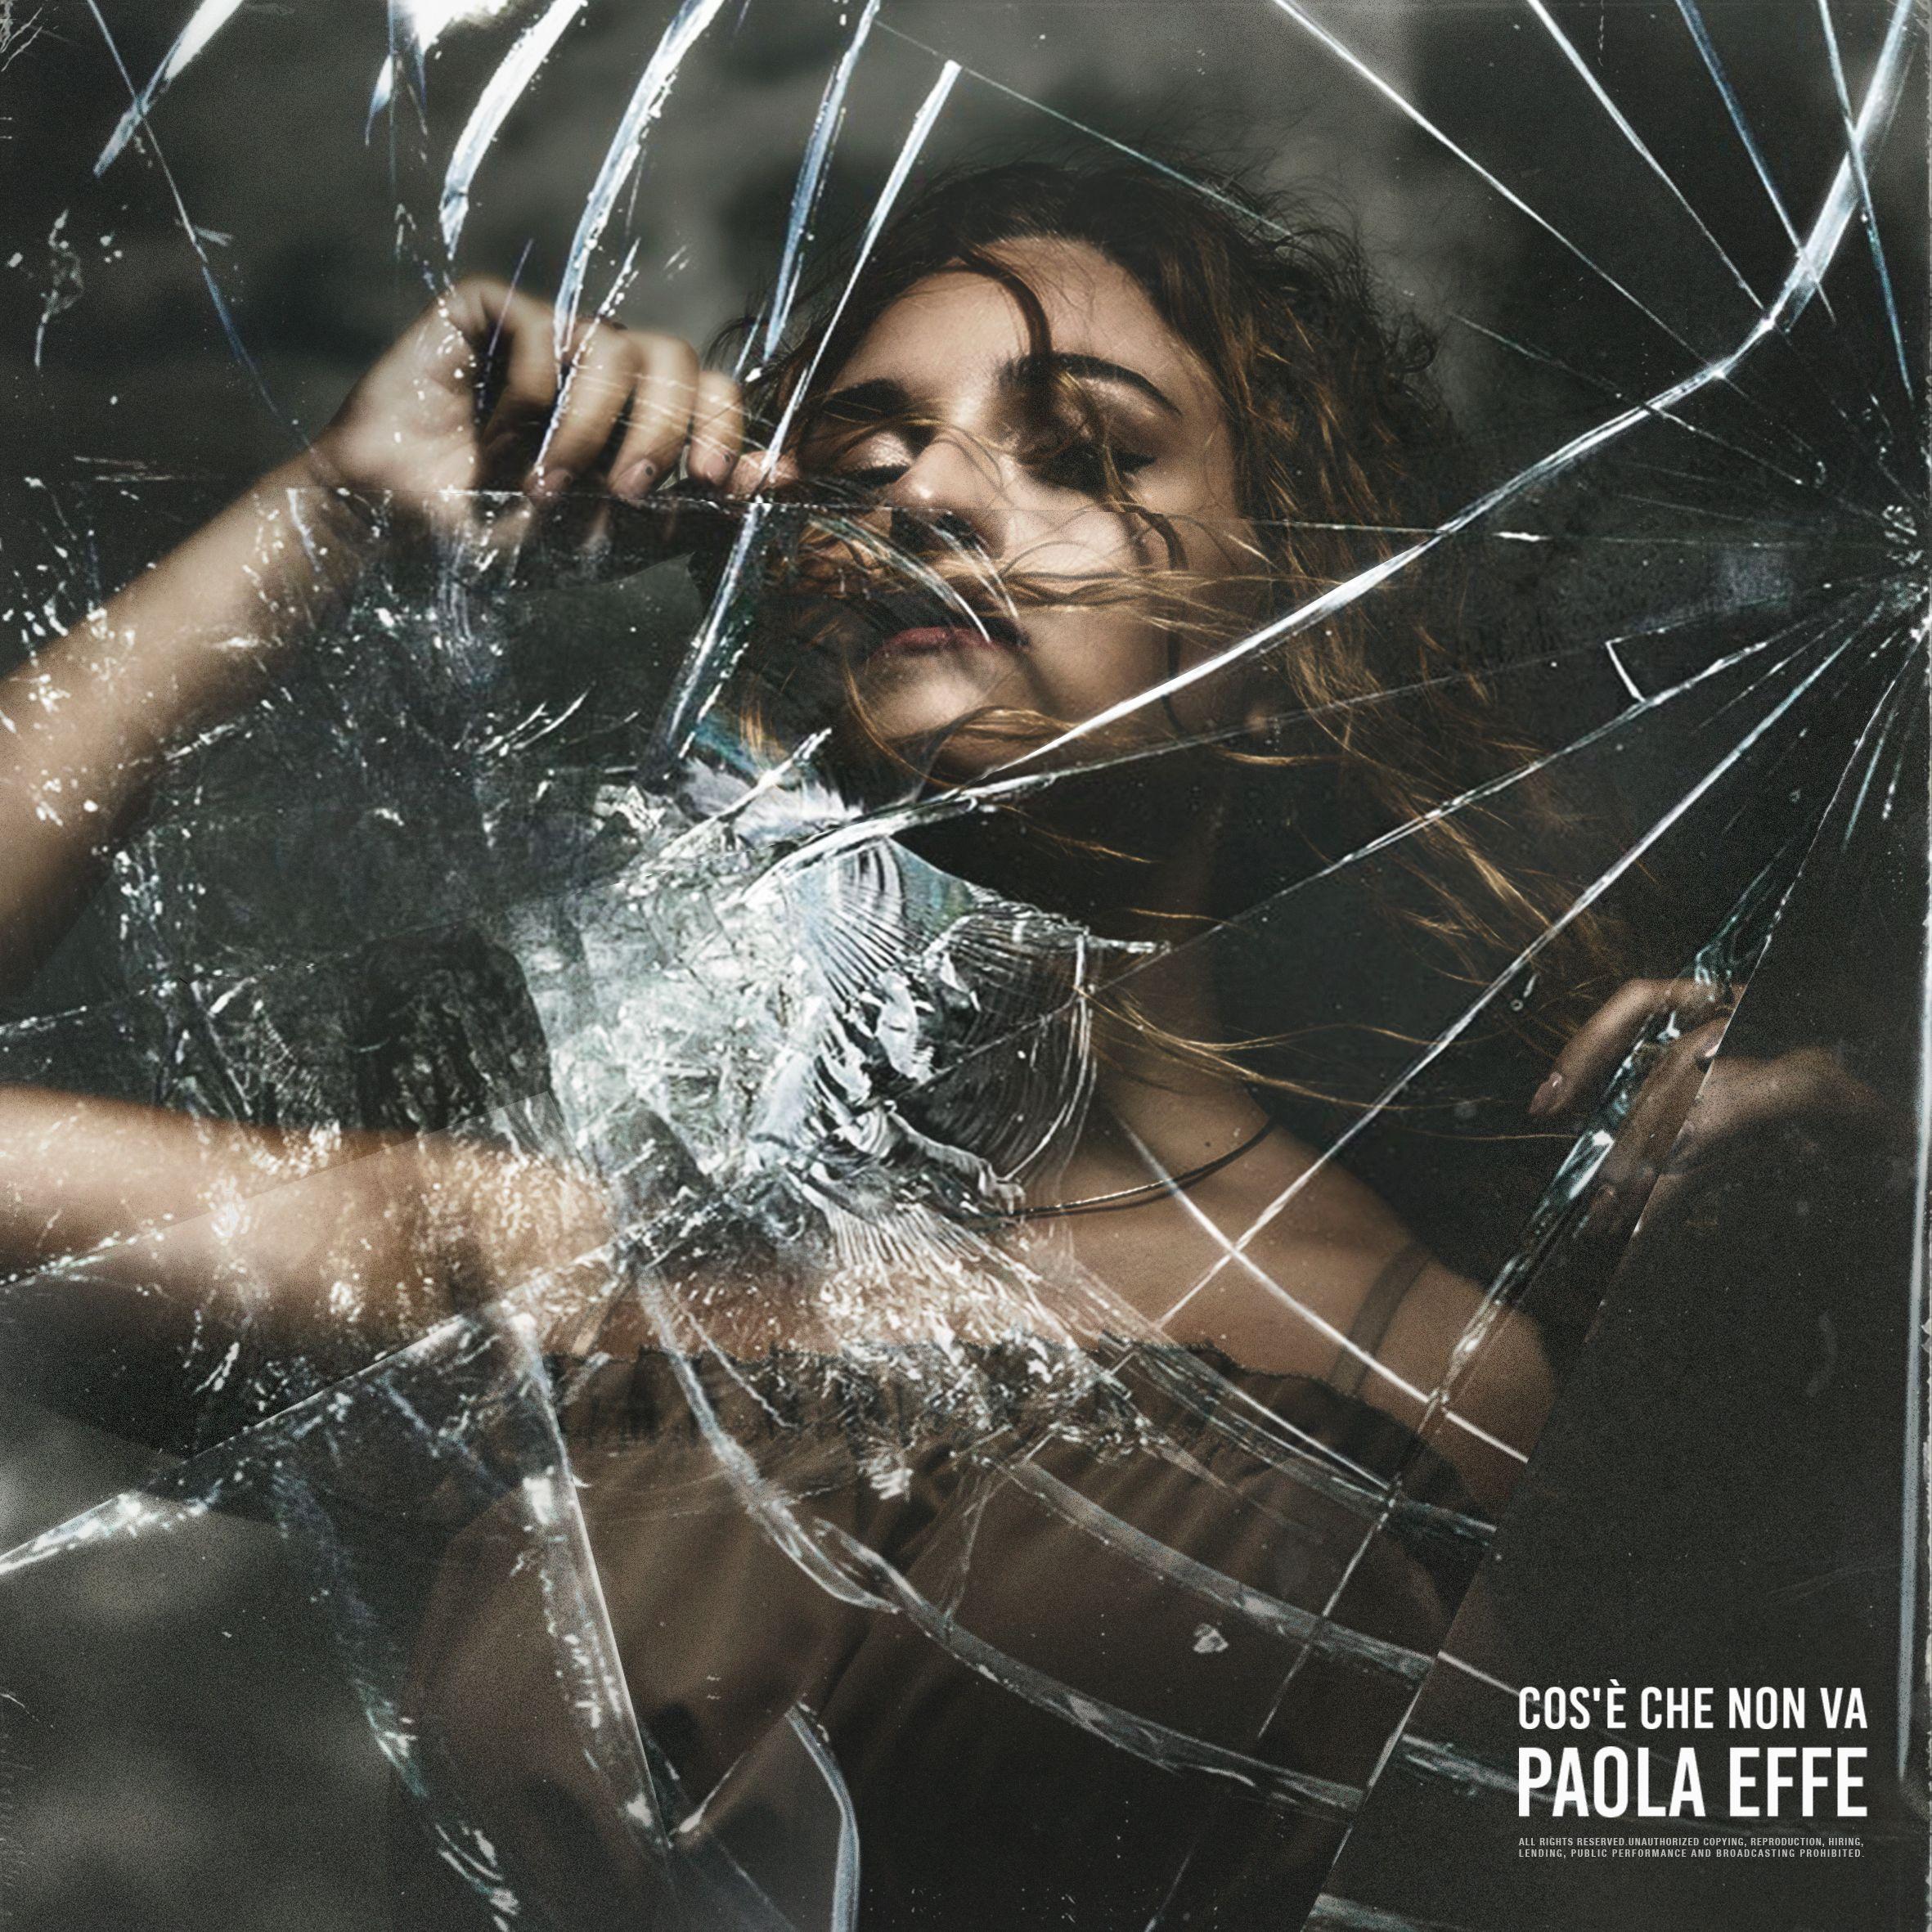 PAOLA EFFE |  COS’È CHE NON VA il singolo della giovane scommessa di Elektra Records/Warner Music Italy